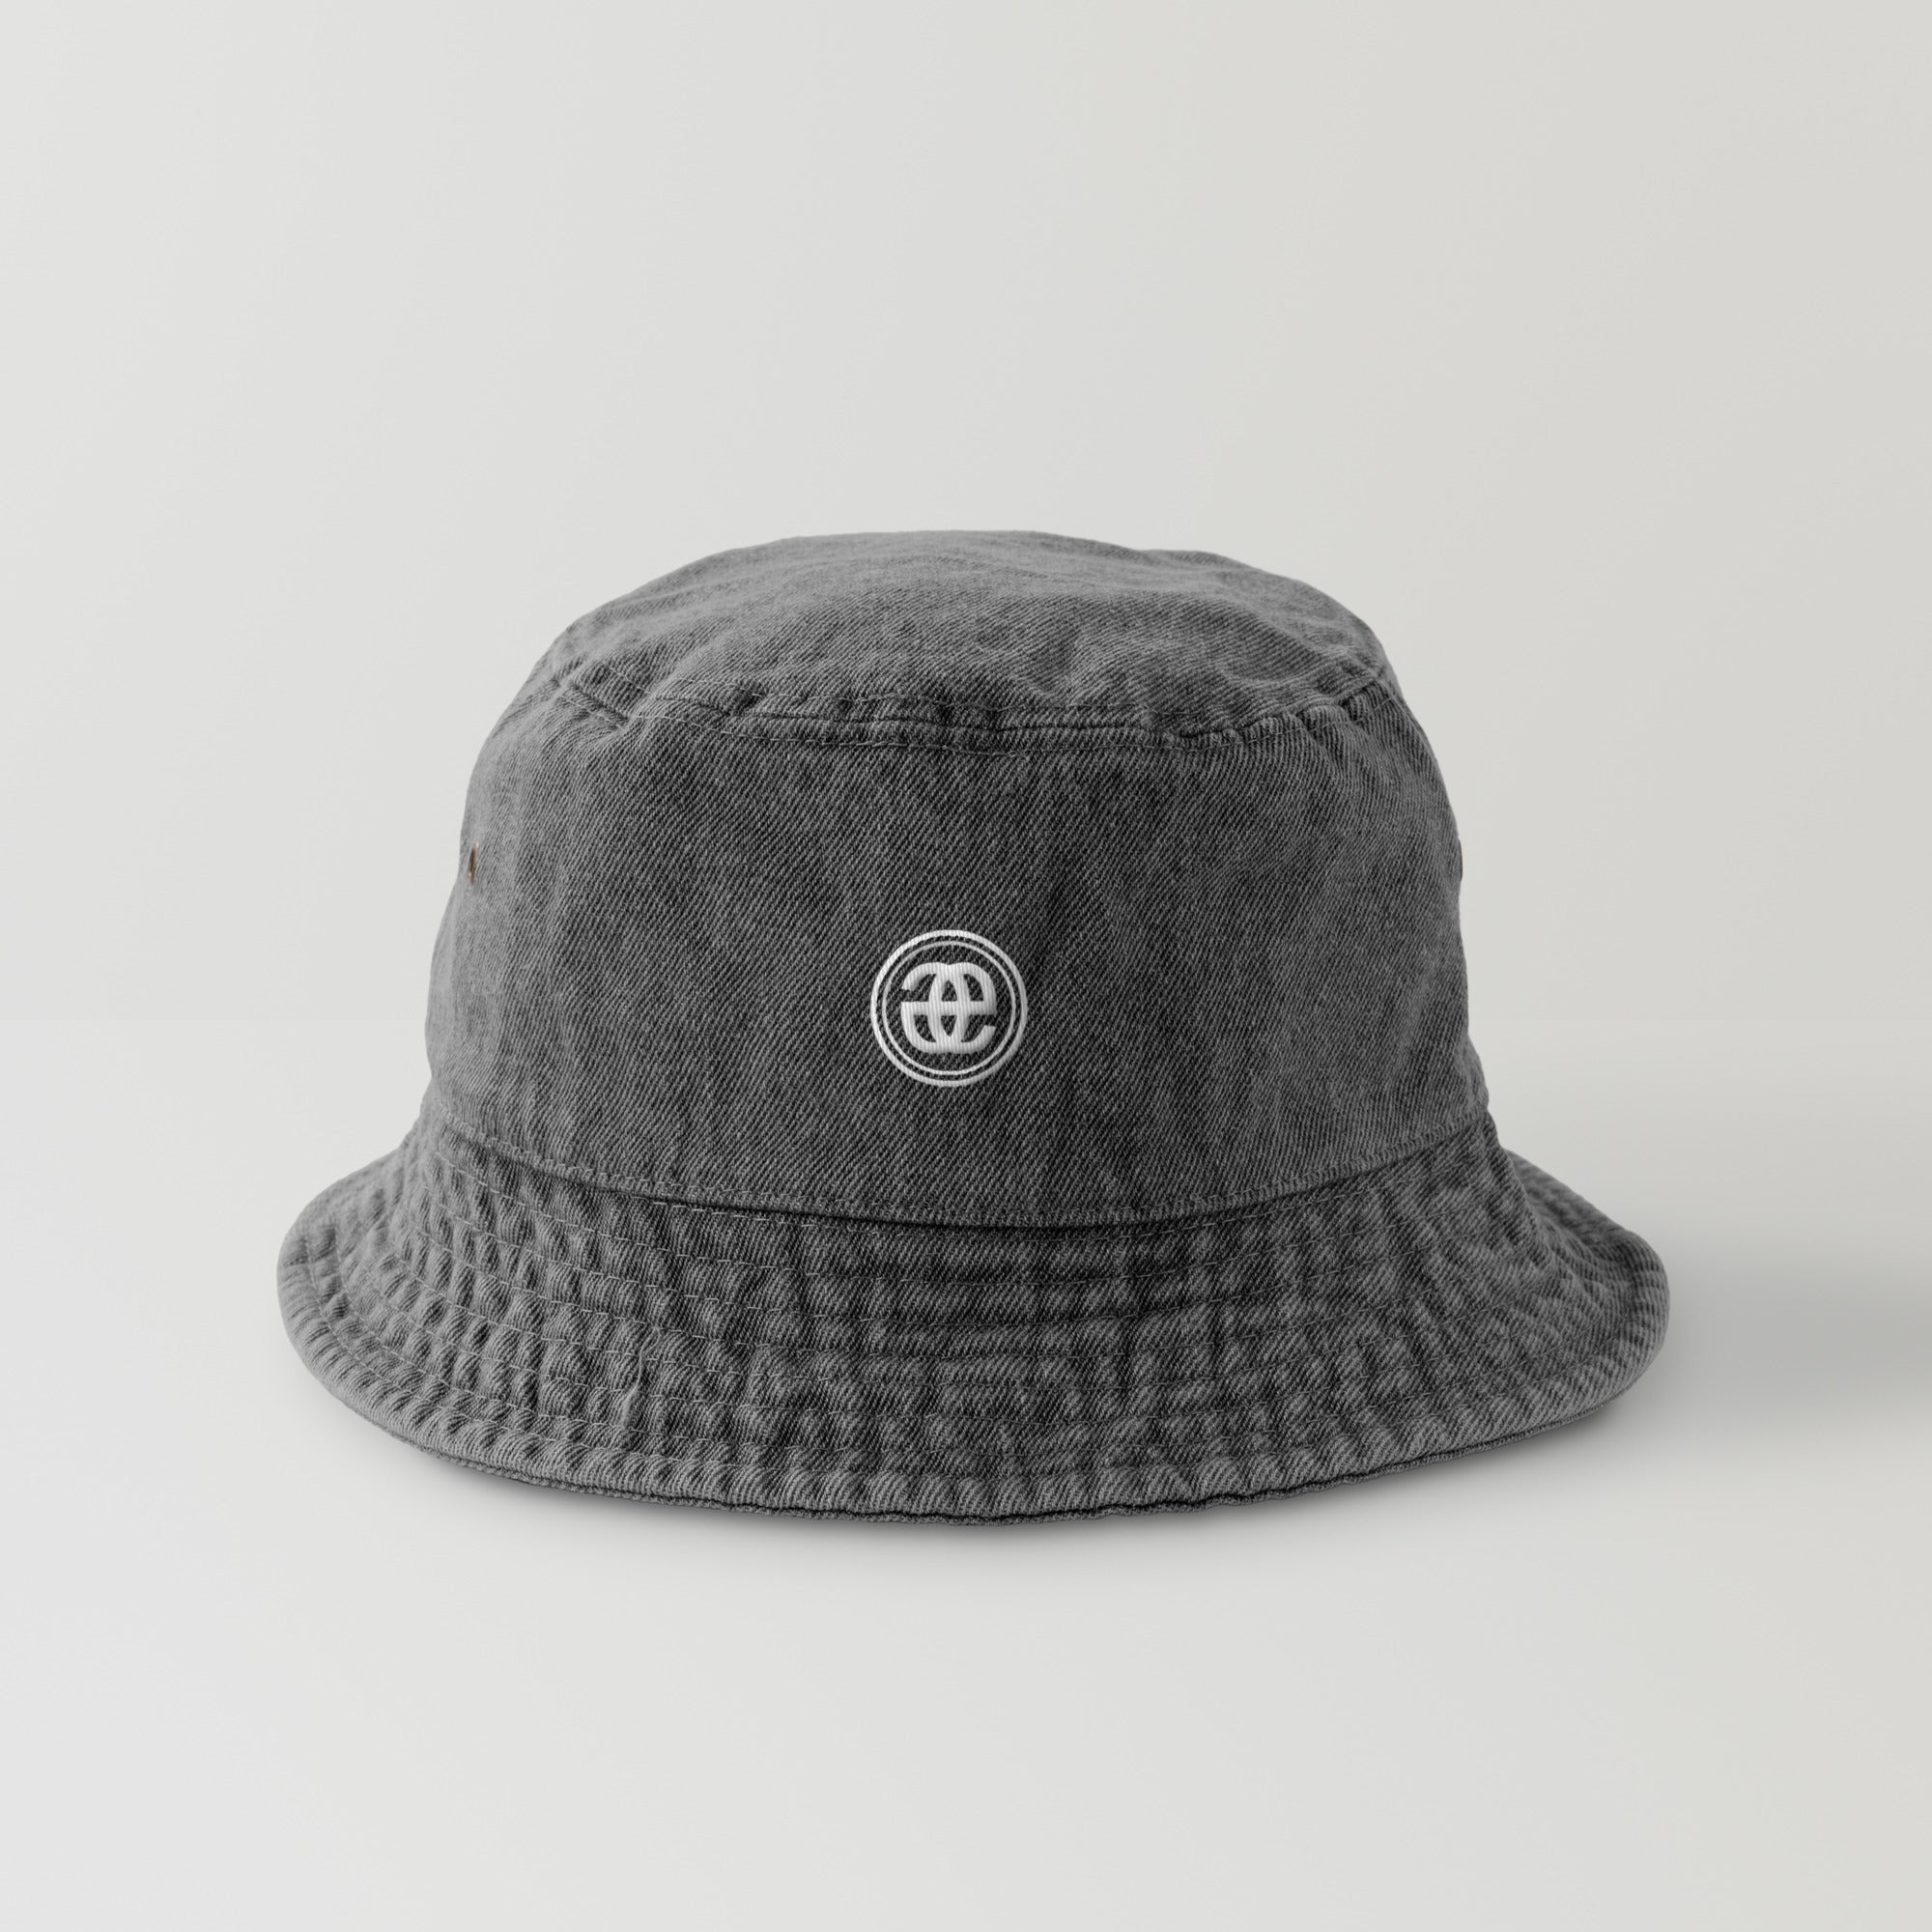 セール中の割引商品 enebeyc エネベイク バケットハット - 帽子